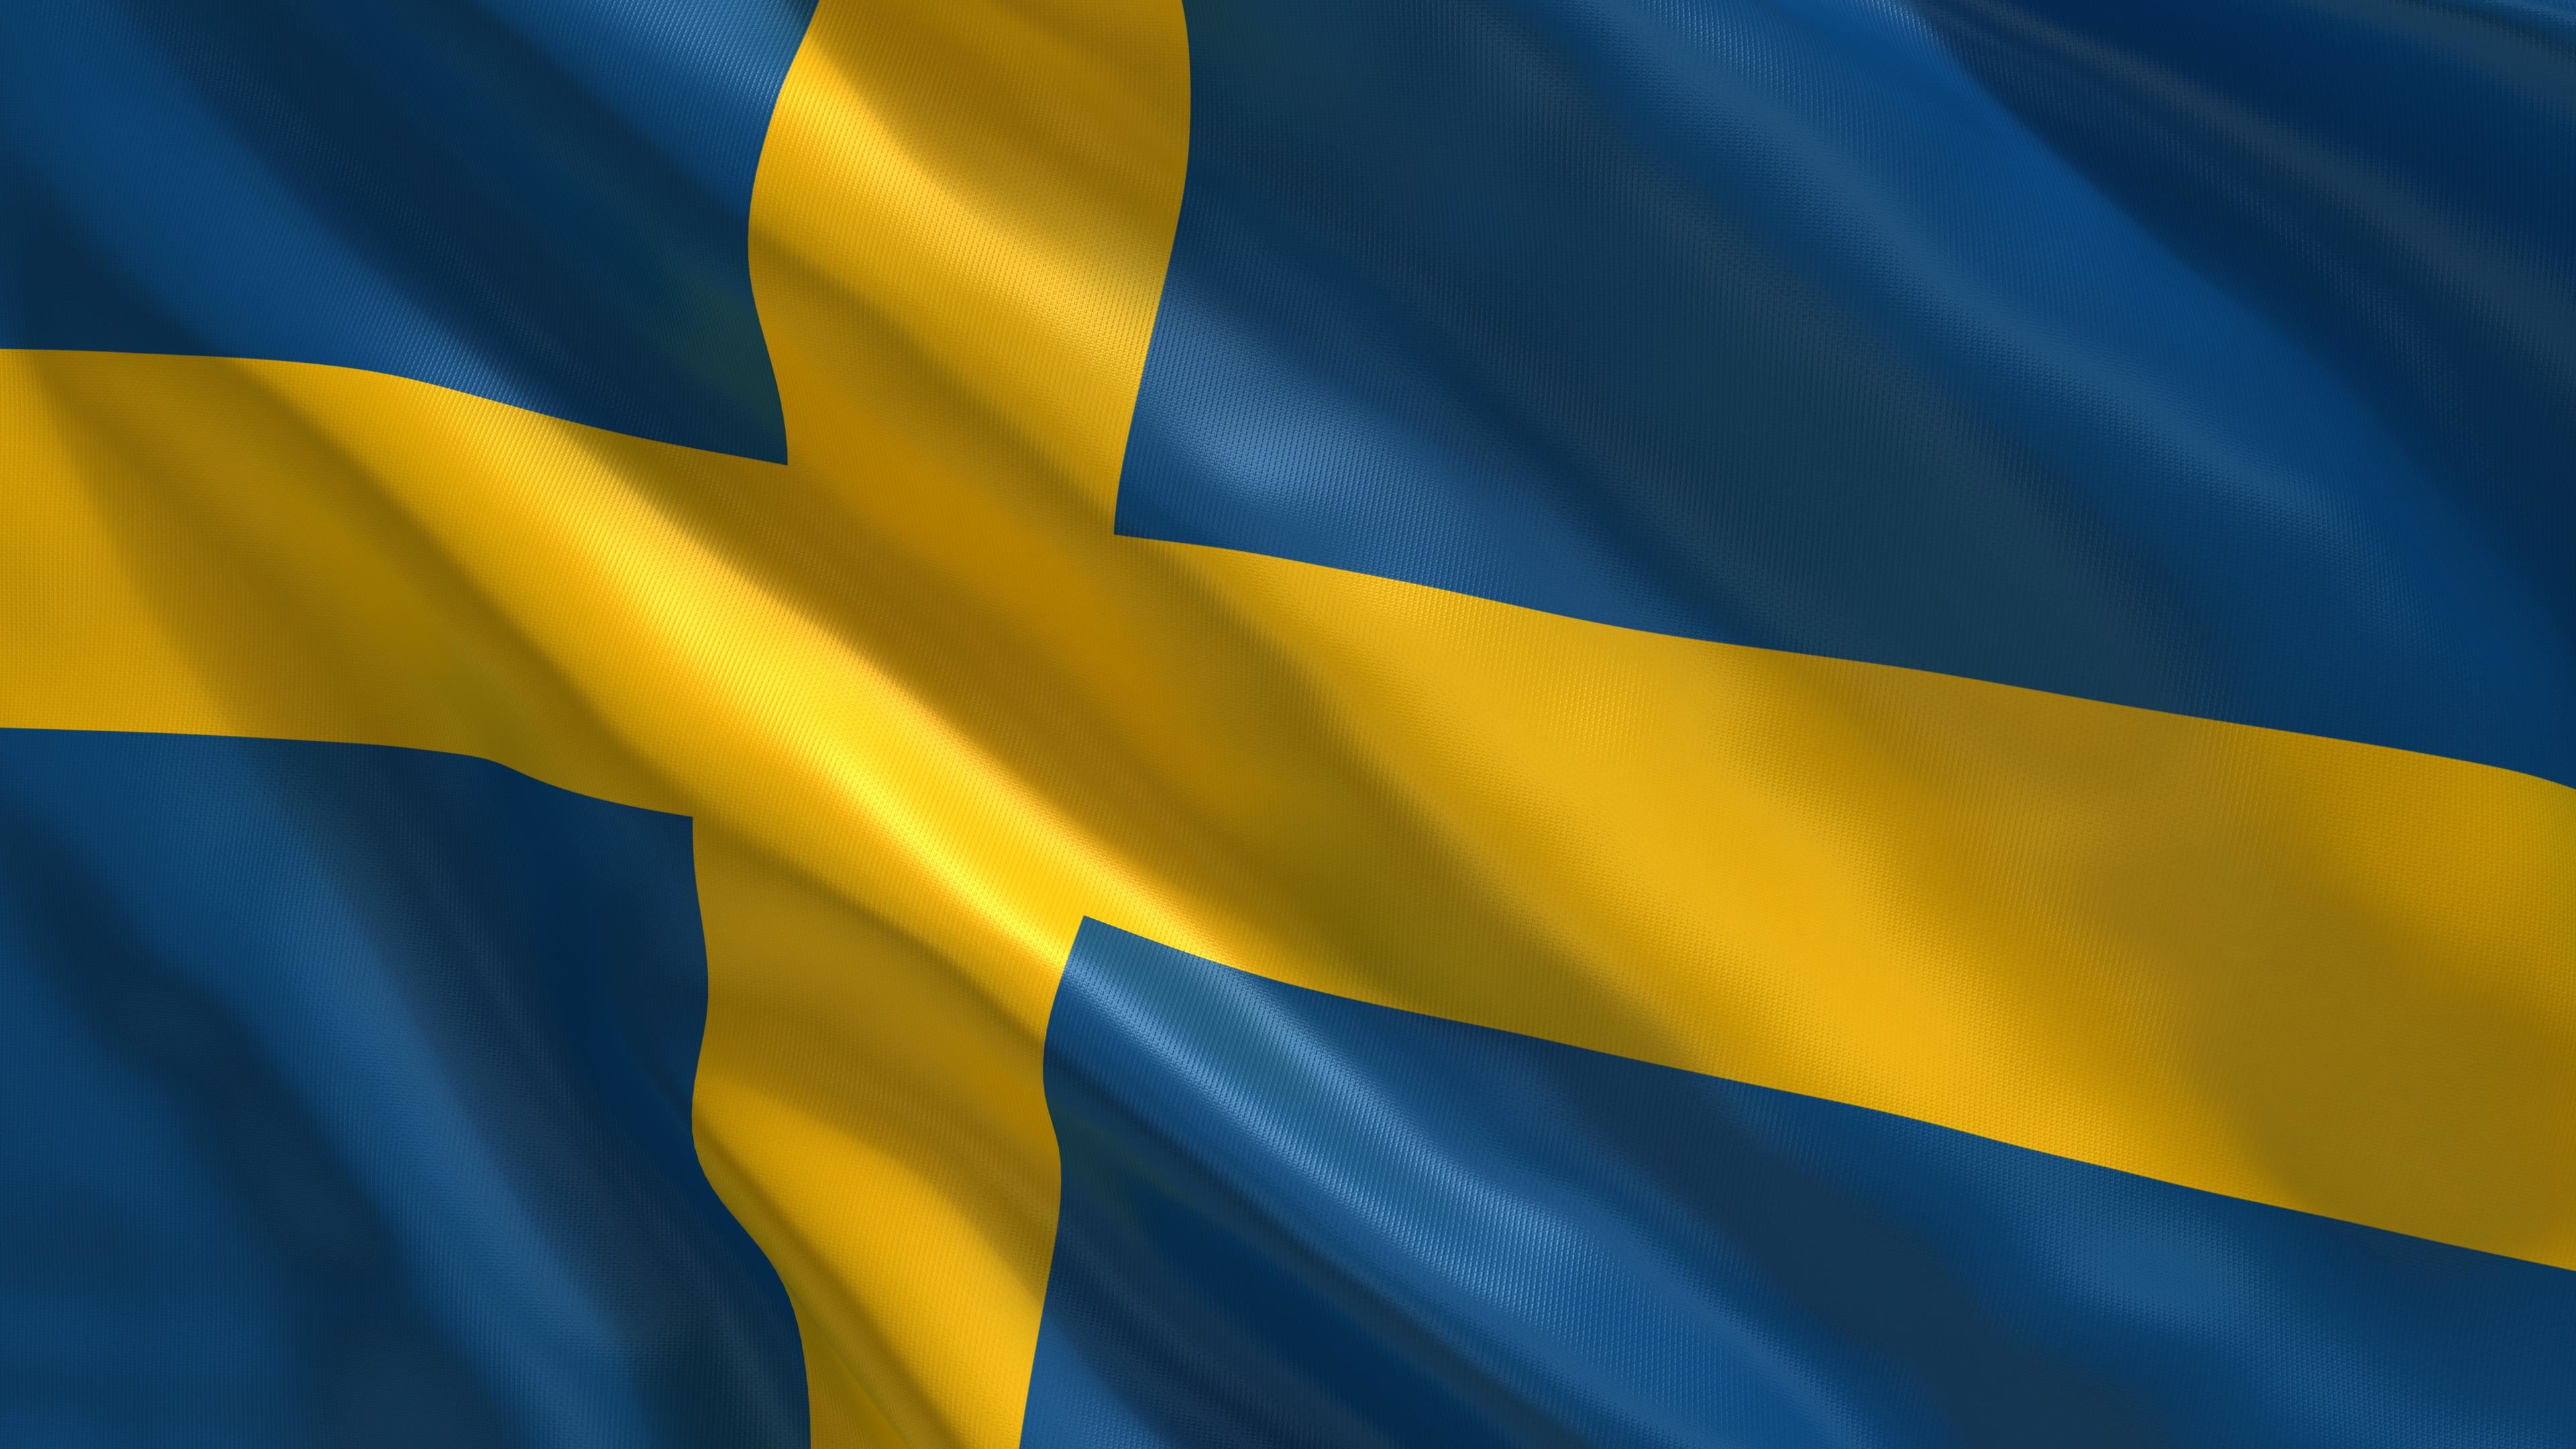 3840x2160 sweden flag wallpaper #809056 Swedish Flag Wallpaper